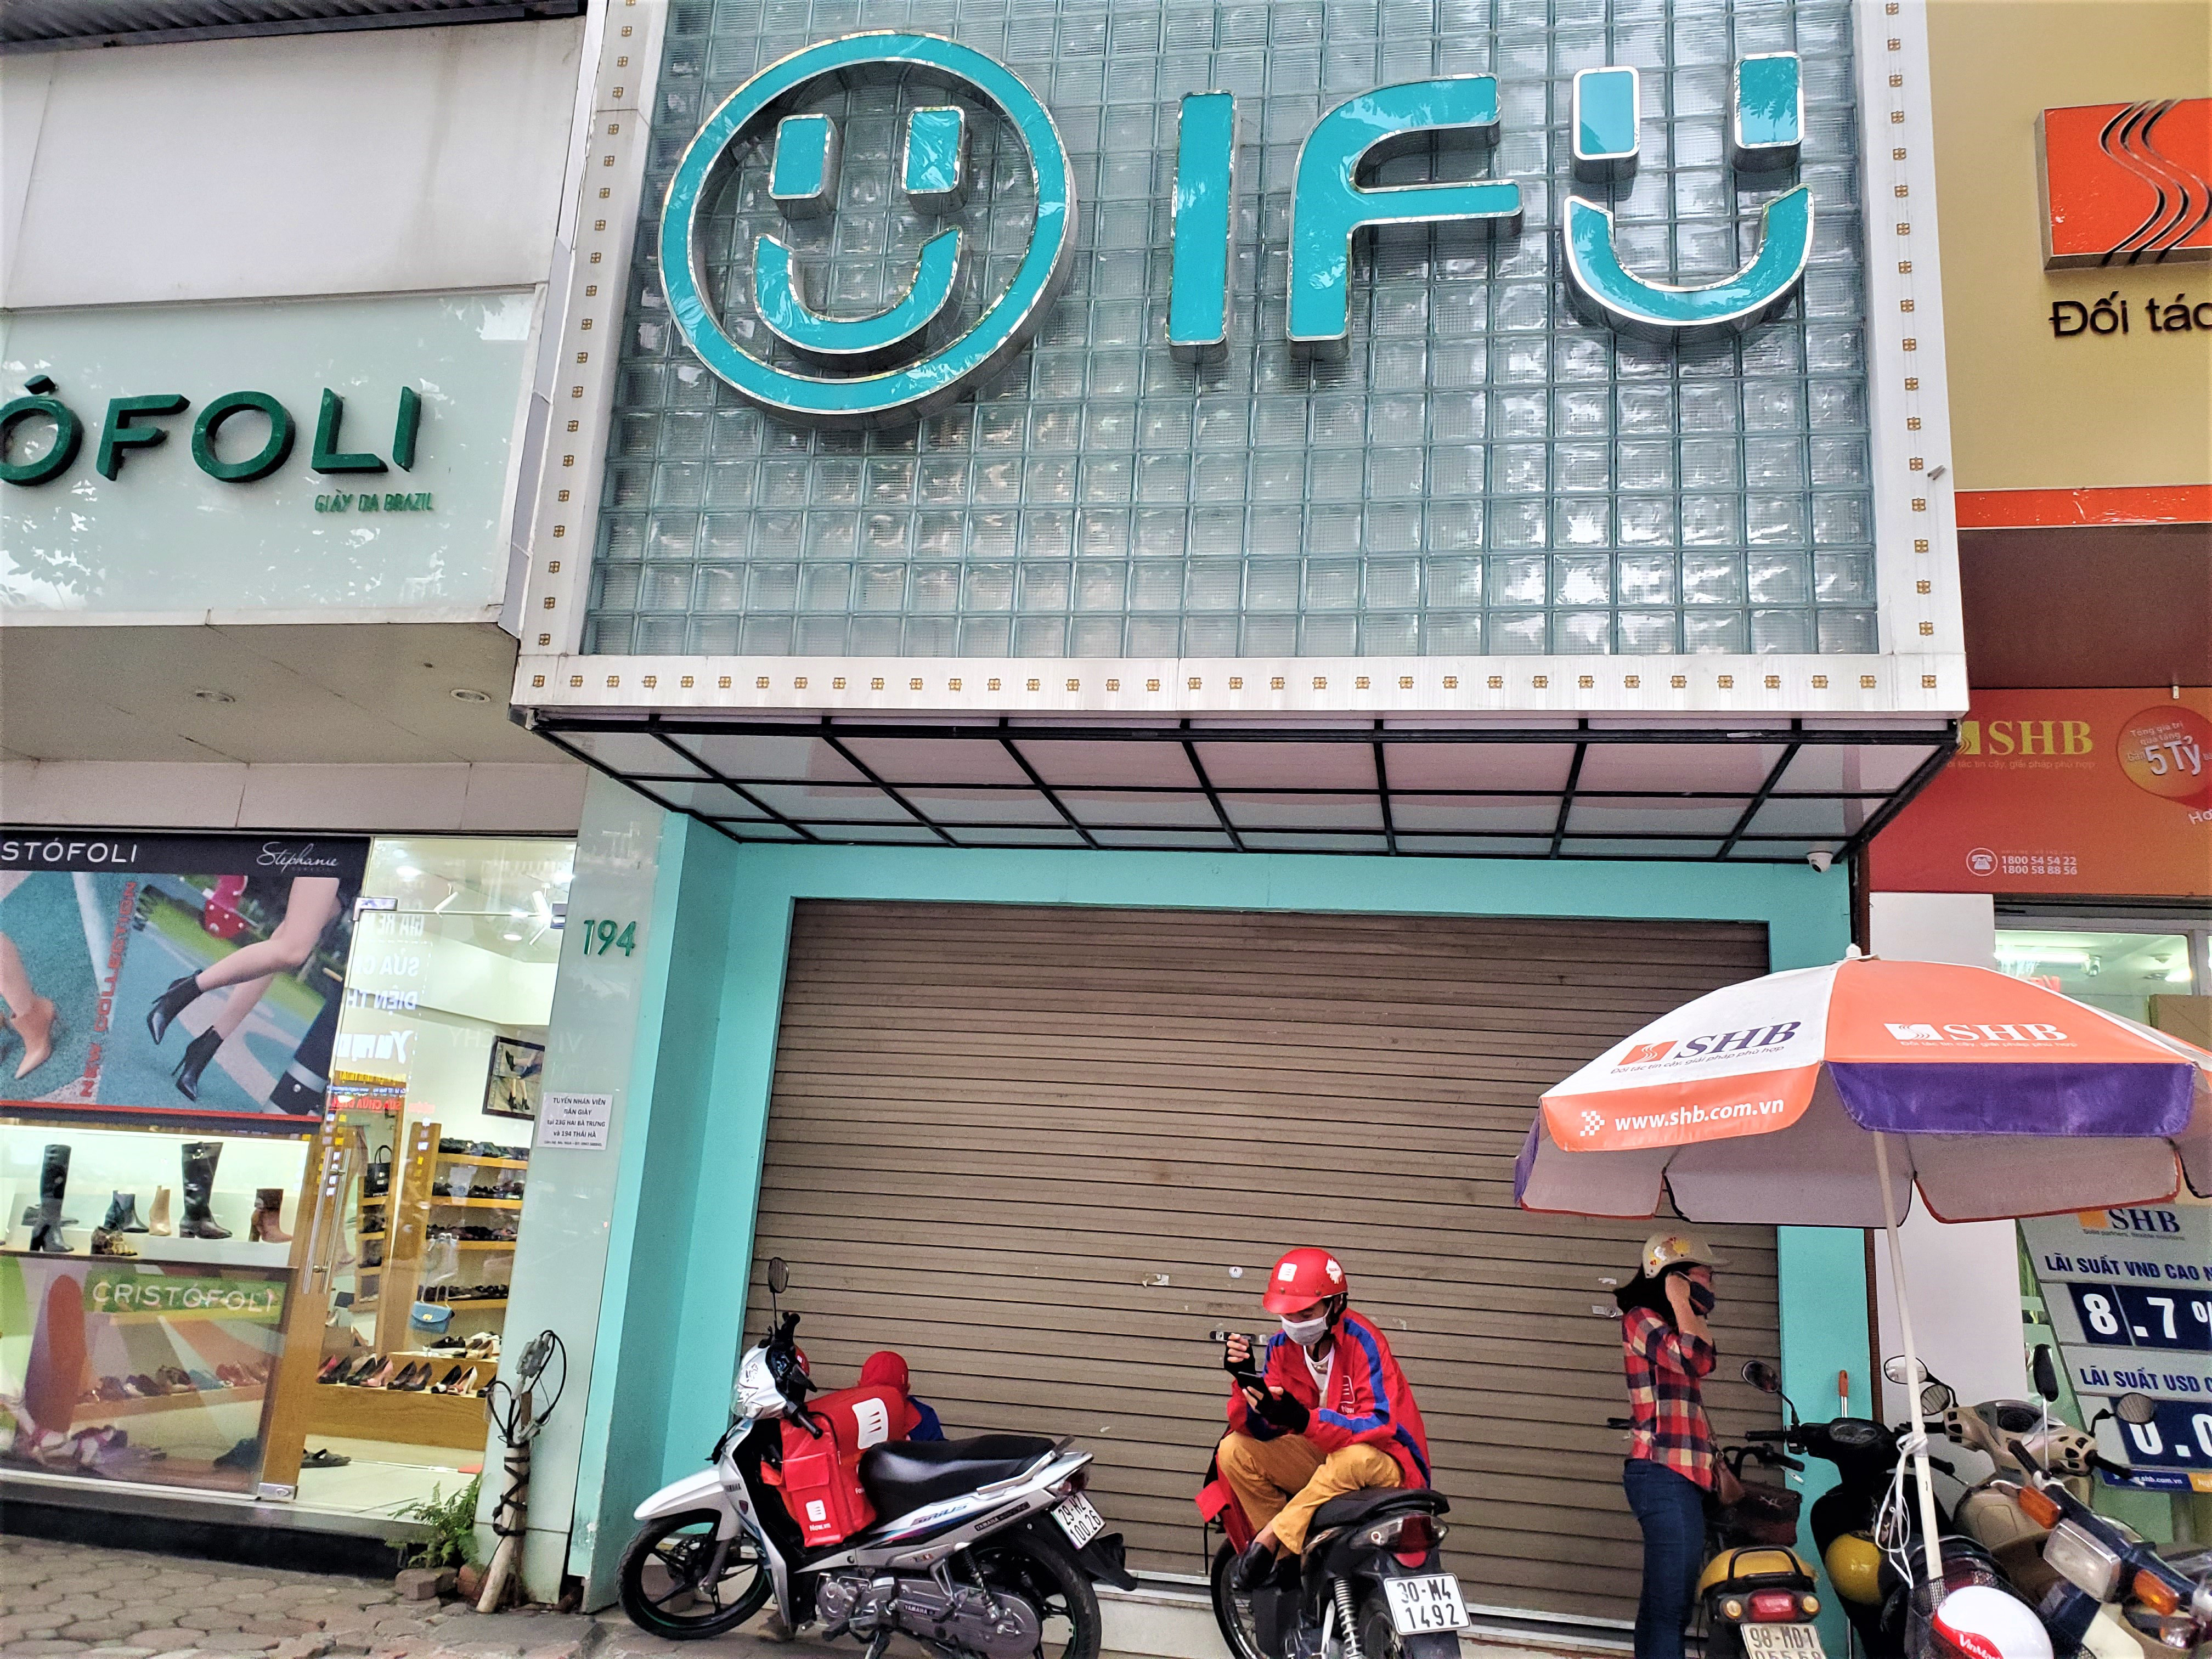 IFU đóng loạt cửa hàng giữa tâm bão âm thầm tráo nhãn mác quần áo - Ảnh 2.